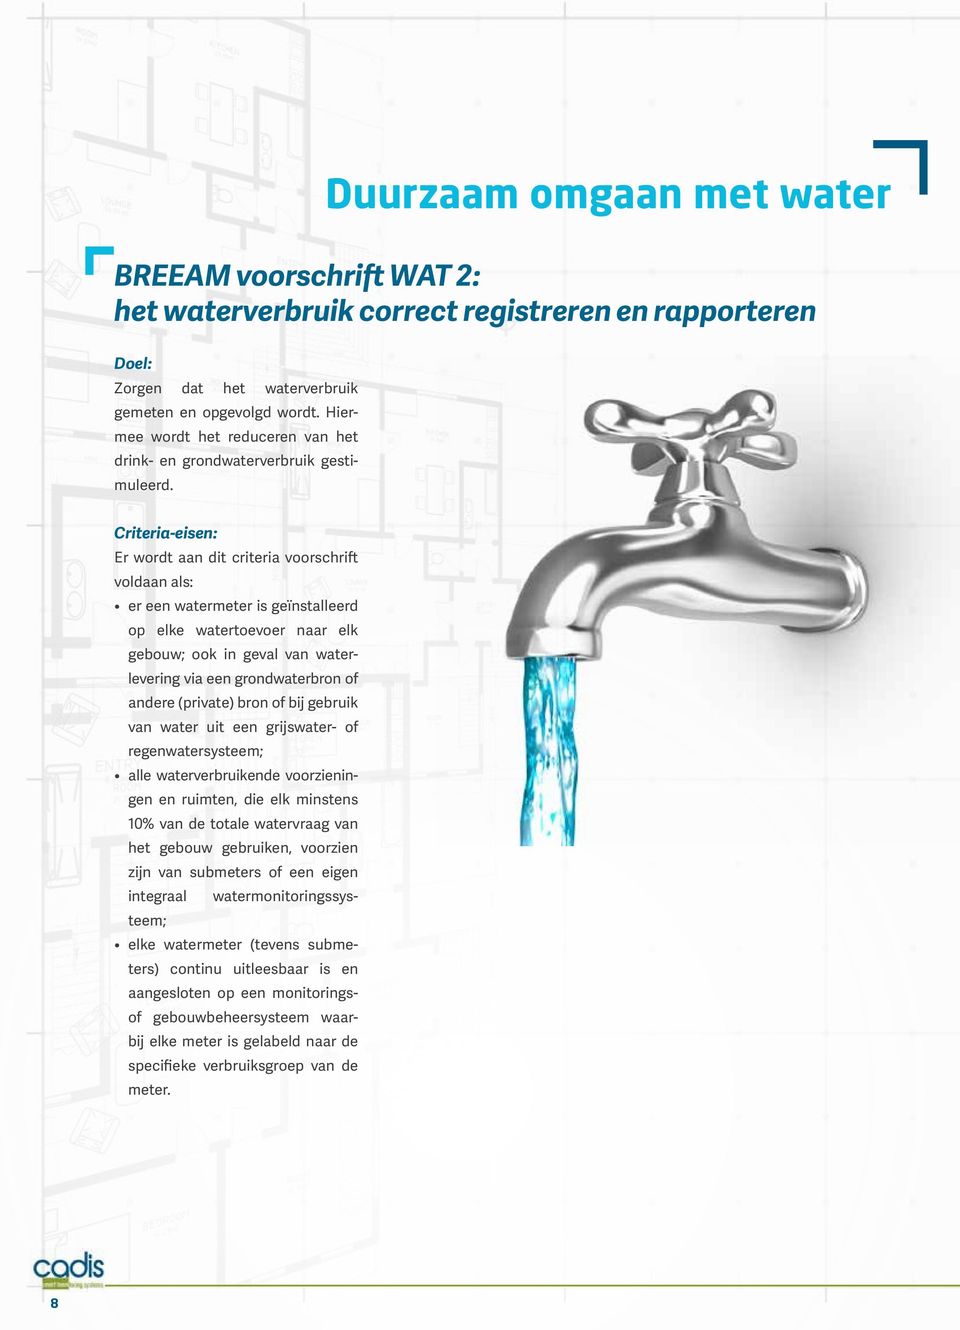 Criteria-eisen: Er wordt aan dit criteria voorschrift voldaan als: er een watermeter is geïnstalleerd op elke watertoevoer naar elk gebouw; ook in geval van waterlevering via een grondwaterbron of